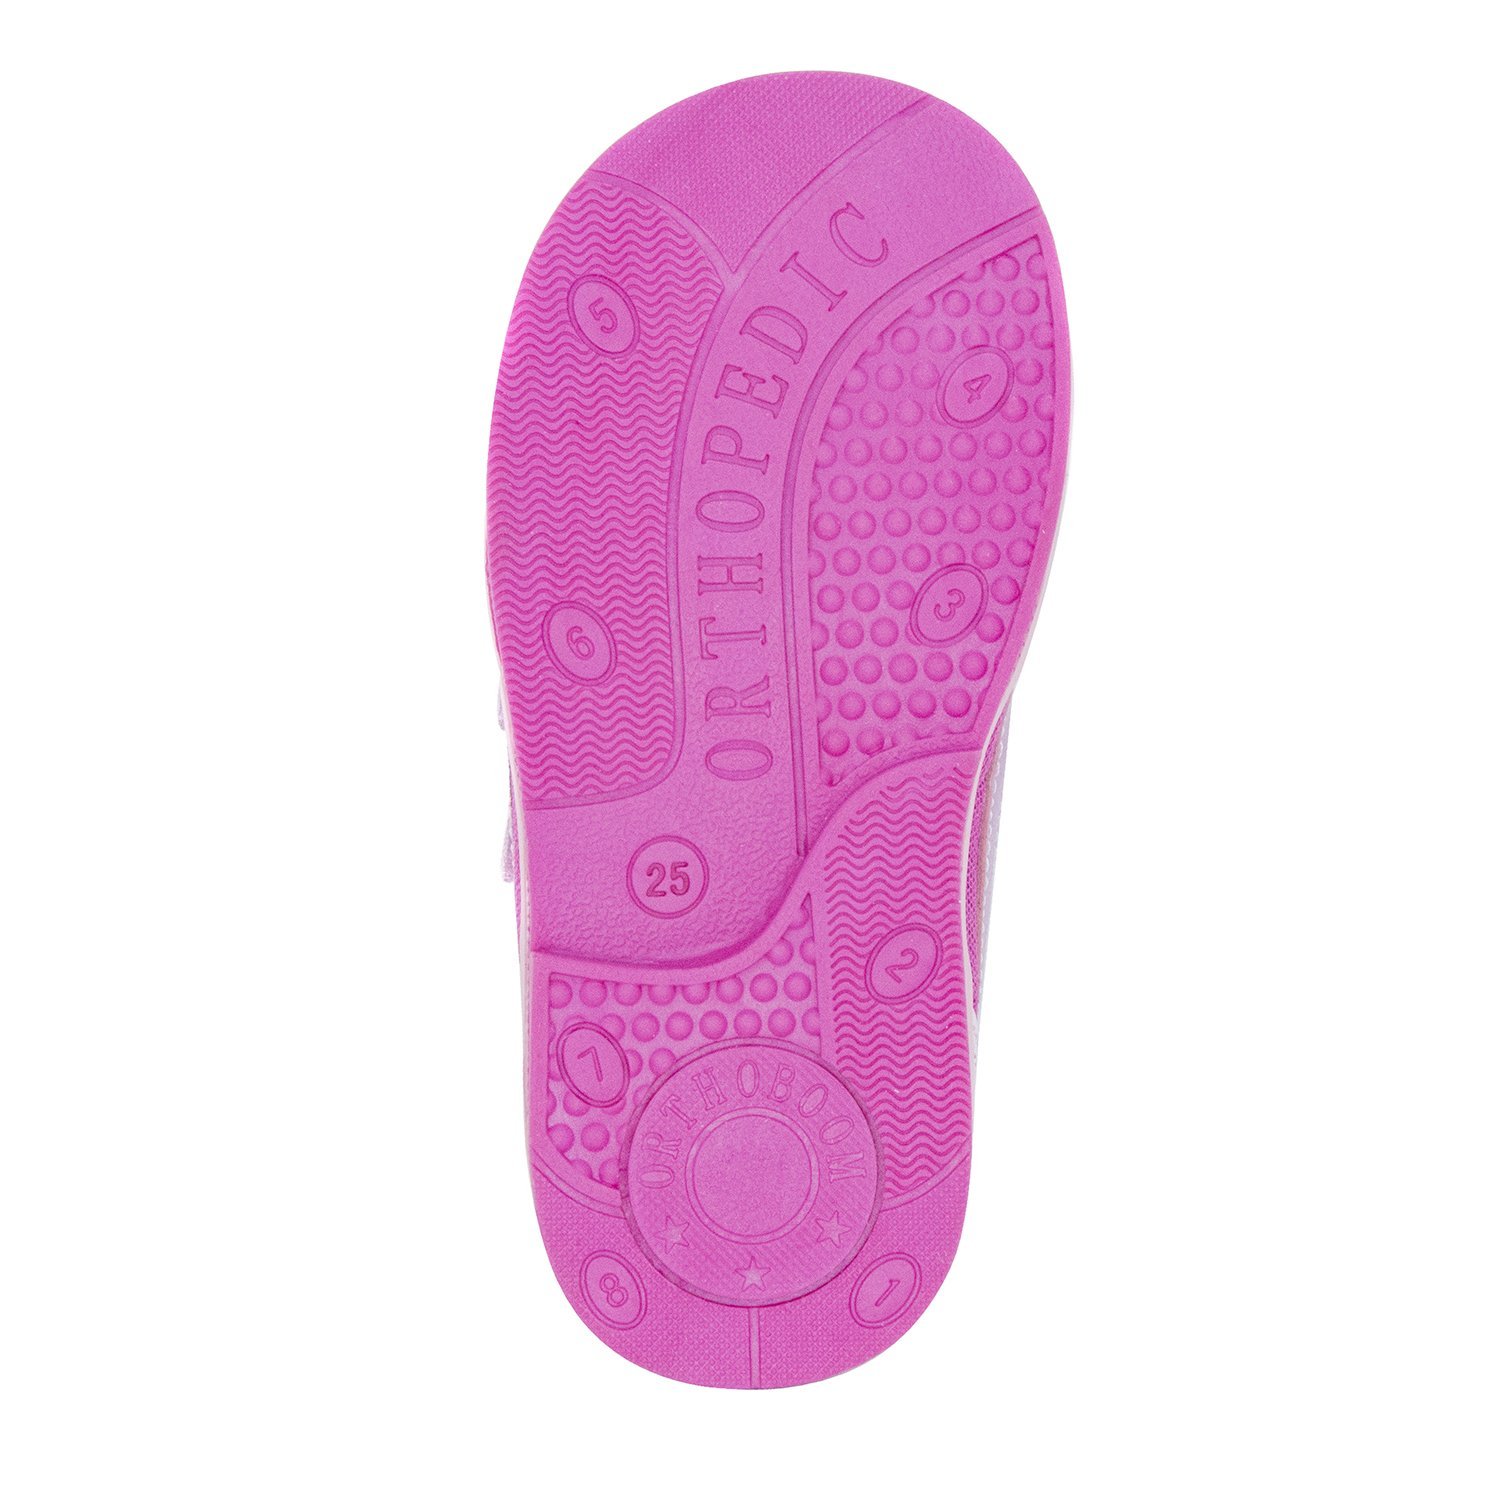 Детские ботинки ORTHOBOOM 81147-16 нежно-розовый с фуксией